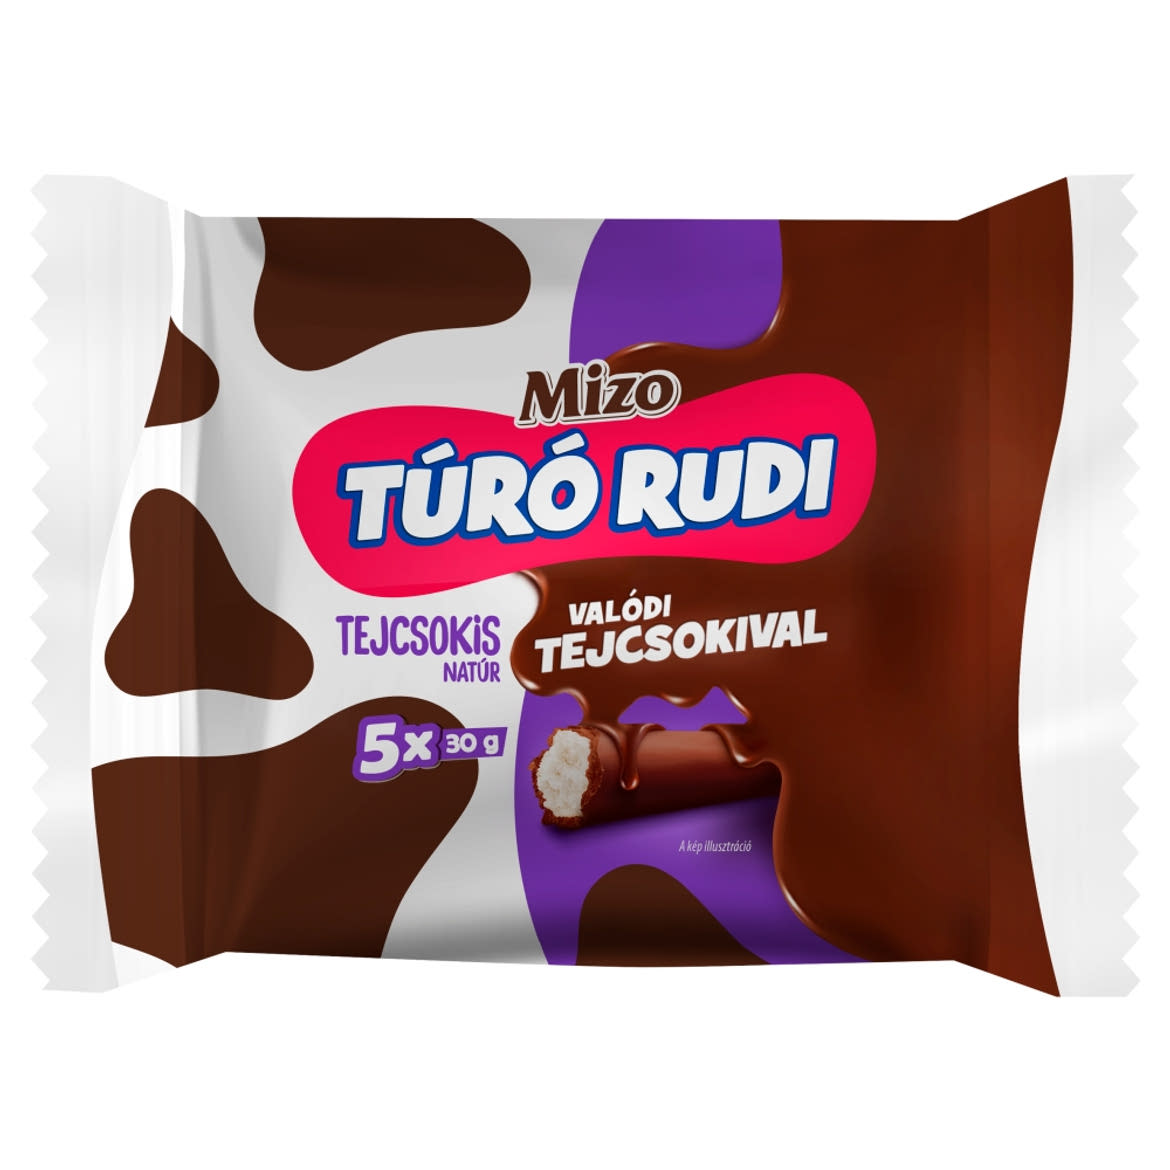 Mizo Túró Rudi natúr túródesszert tejcsokoládé bevonattal 5 x 30 g (150 g)